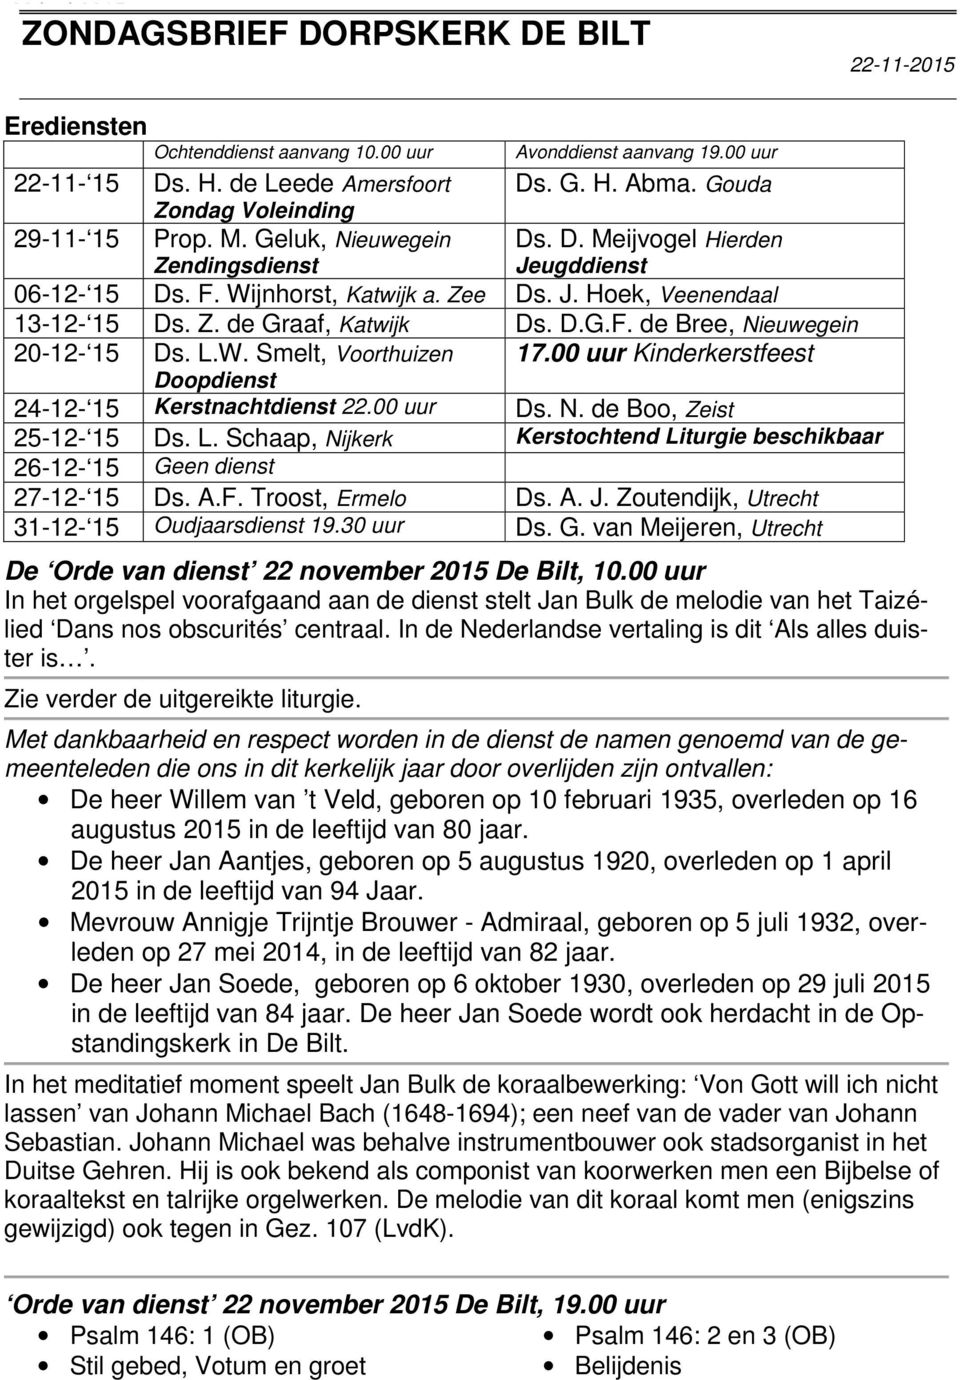 Wijnhorst, Katwijk a. Zee Ds. J. Hoek, Veenendaal 13-12- 15 Ds. Z. de Graaf, Katwijk Ds. D.G.F. de Bree, Nieuwegein 20-12- 15 Ds. L.W. Smelt, Voorthuizen 17.